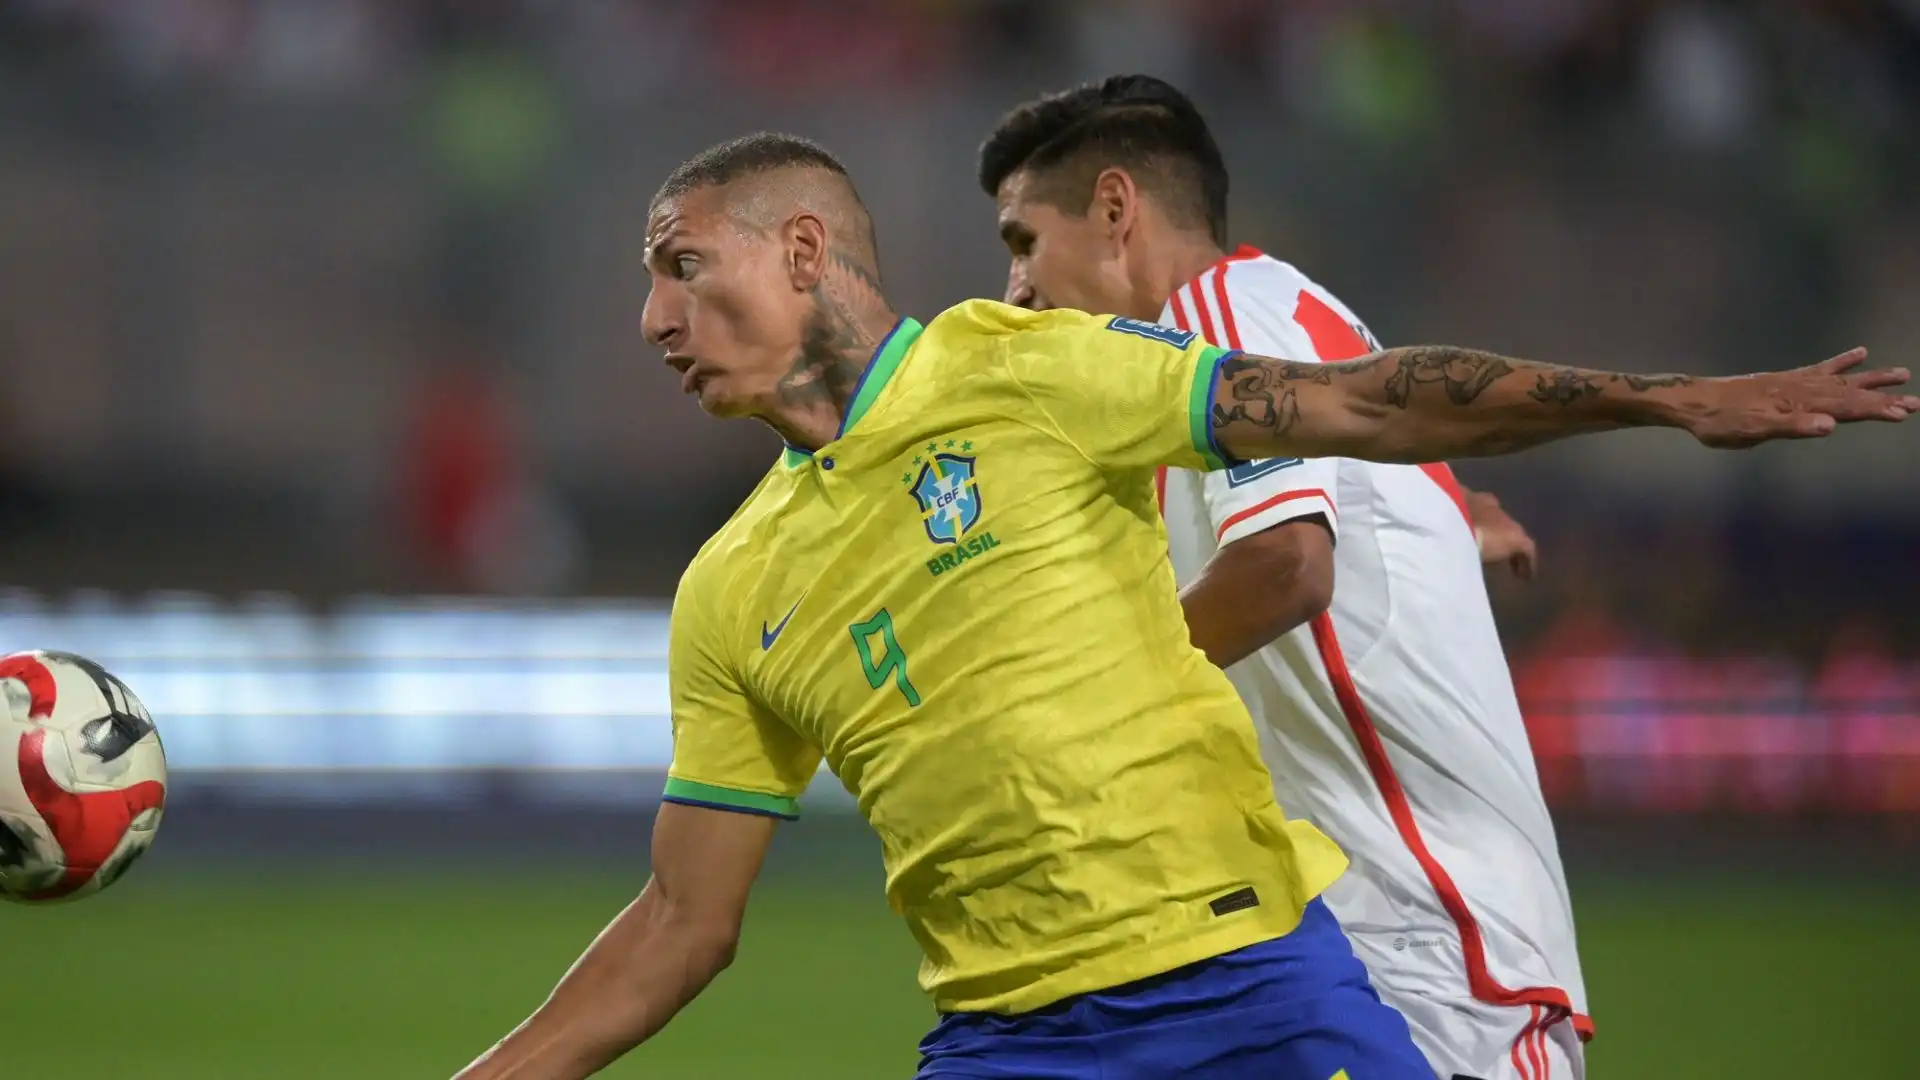 L'attaccante brasiliano sta attraversando un periodo complicato sia con il Tottenham, sia con la maglia del Brasile